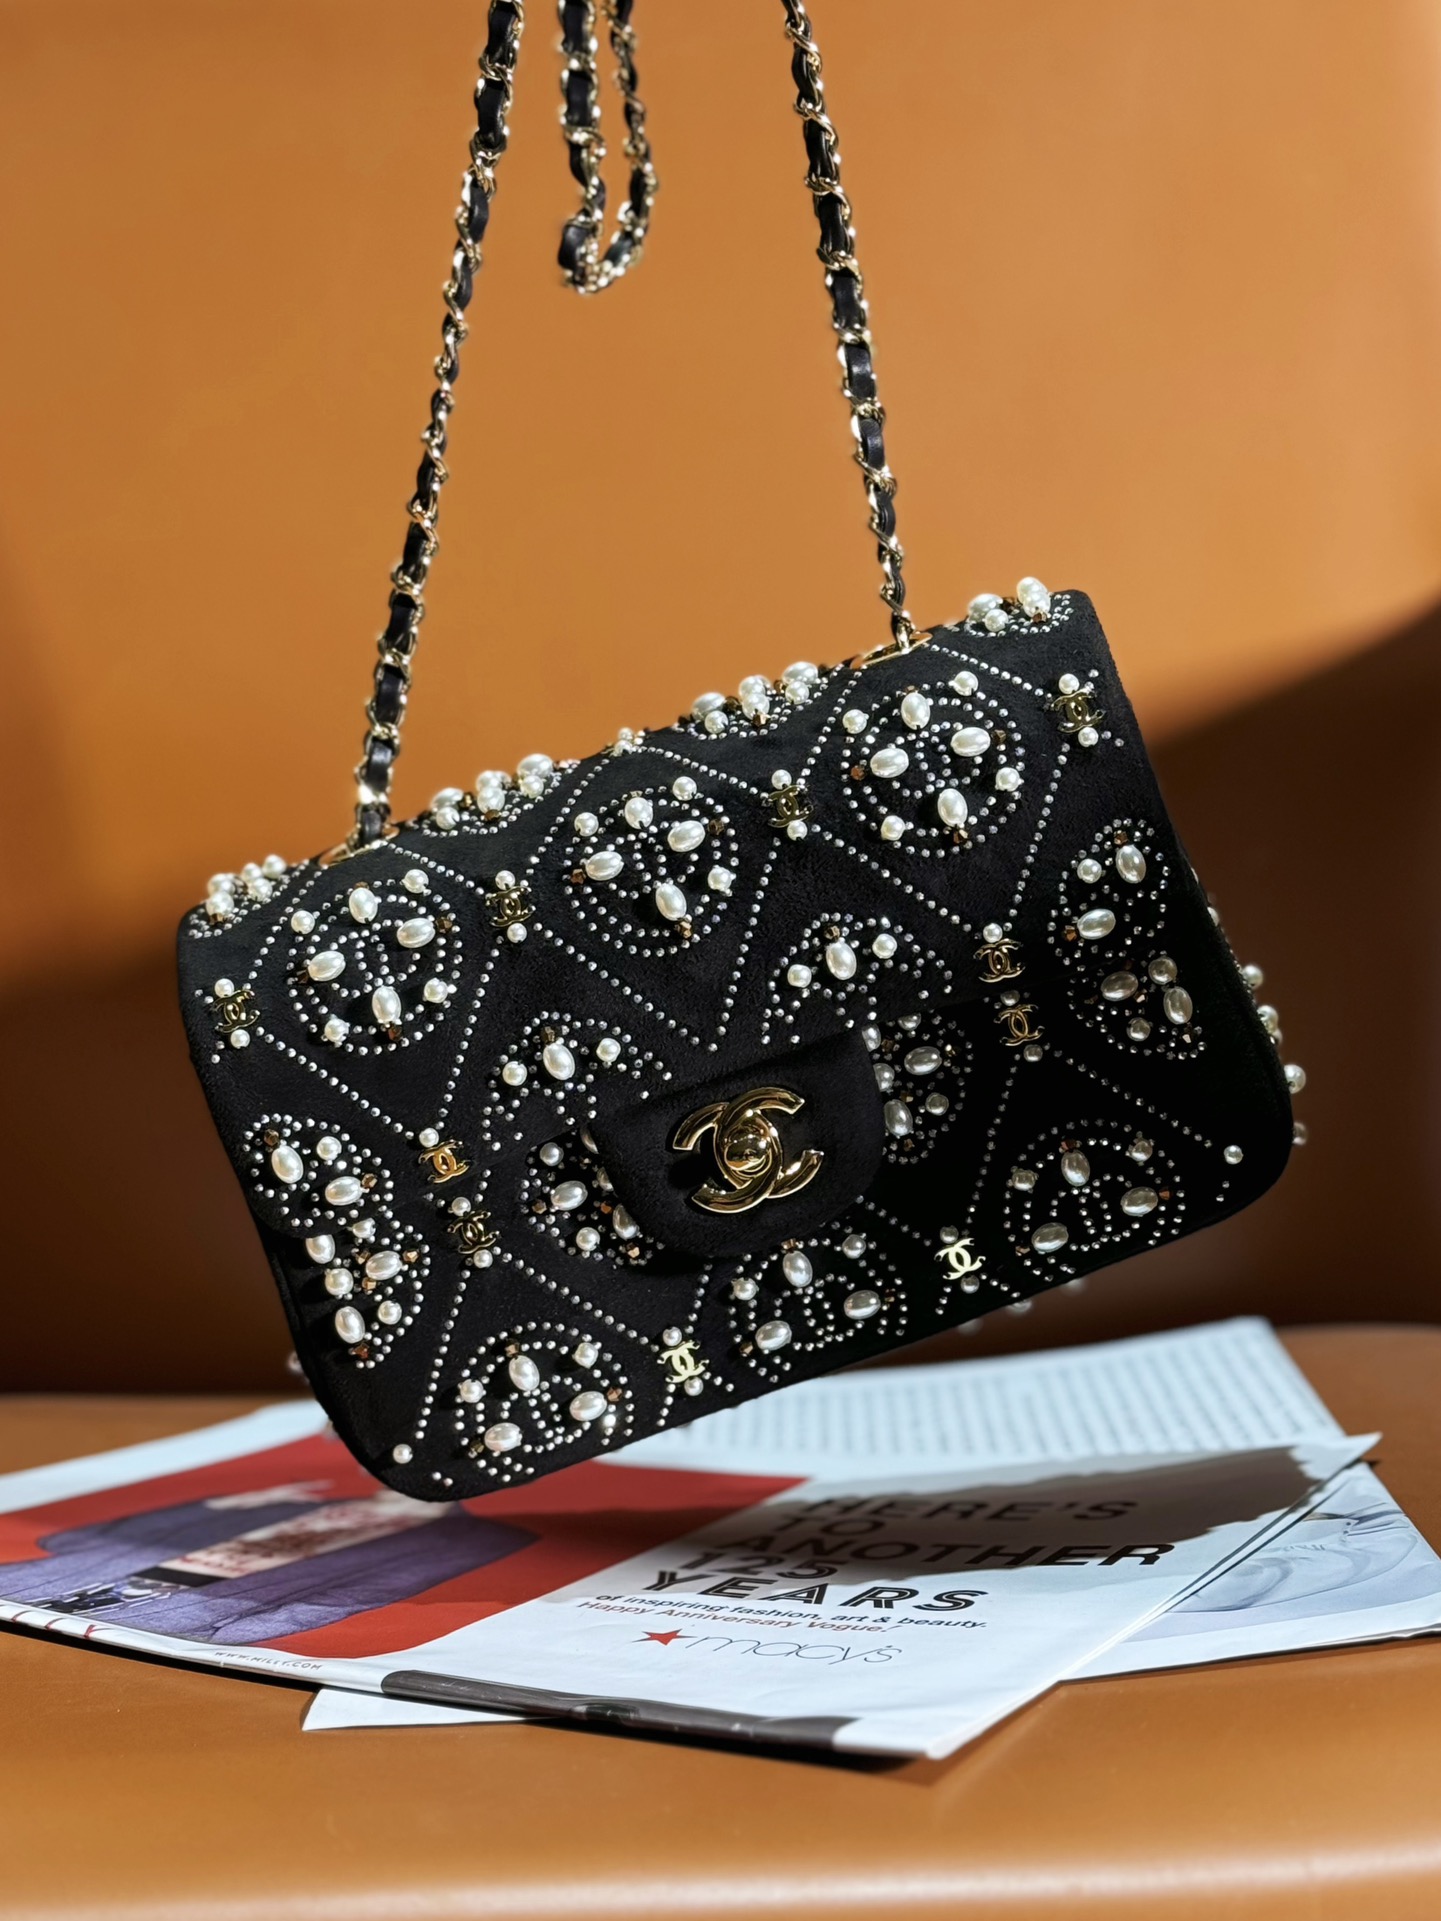 Hohe Qualität perfekt
 Chanel Classic Flap Bag Taschen Umhängetaschen  & Schultertaschen Mit Diamanten besetzt Weben Frühling/Sommer Kollektion Vintage Mini